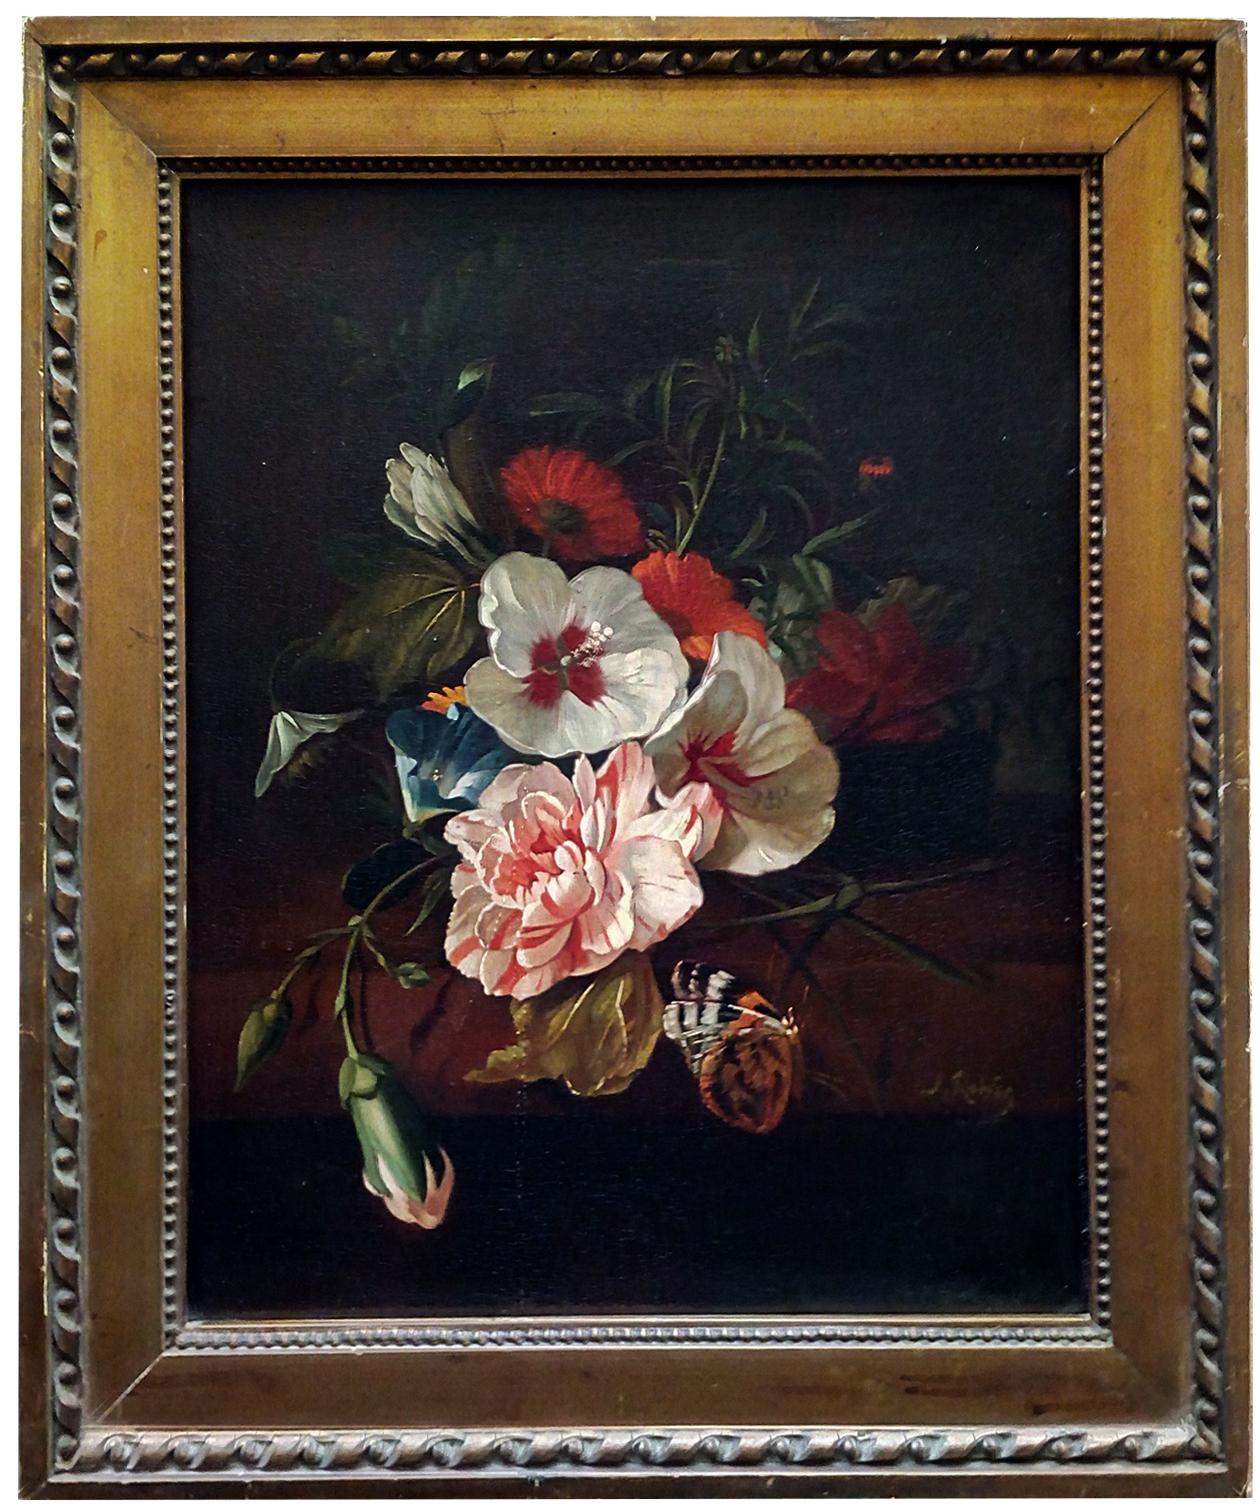 FLOWERS – Italienisches Stillleben Öl auf Leinwand Gemälde, J. Robis